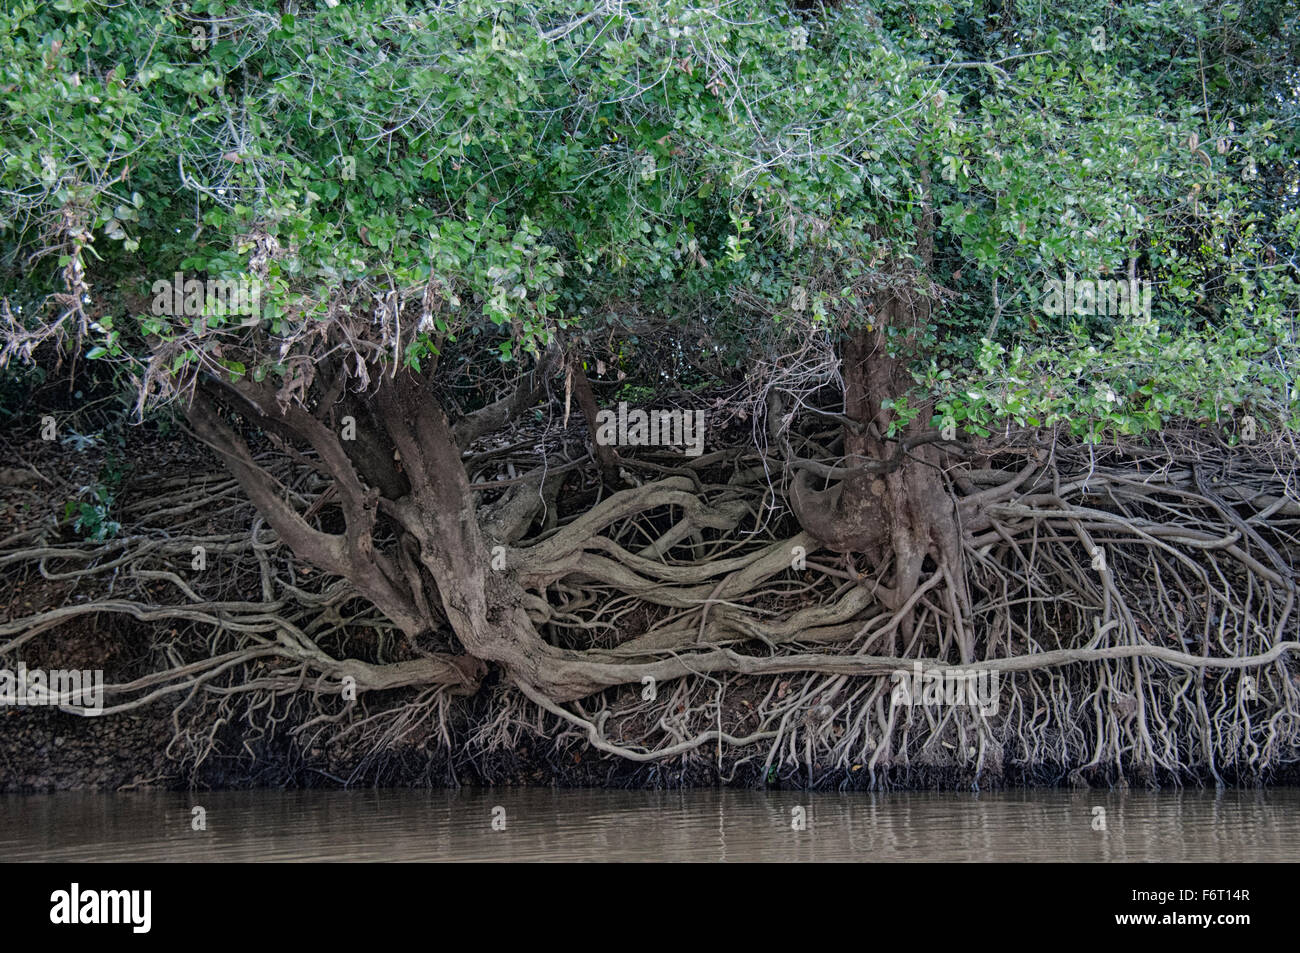 Pendant la saison sèche, le niveau de la rivière baisse, exposant les racines des arbres sur les berges des rivières dans le Pantanal, Mato Grosso, Brésil Banque D'Images